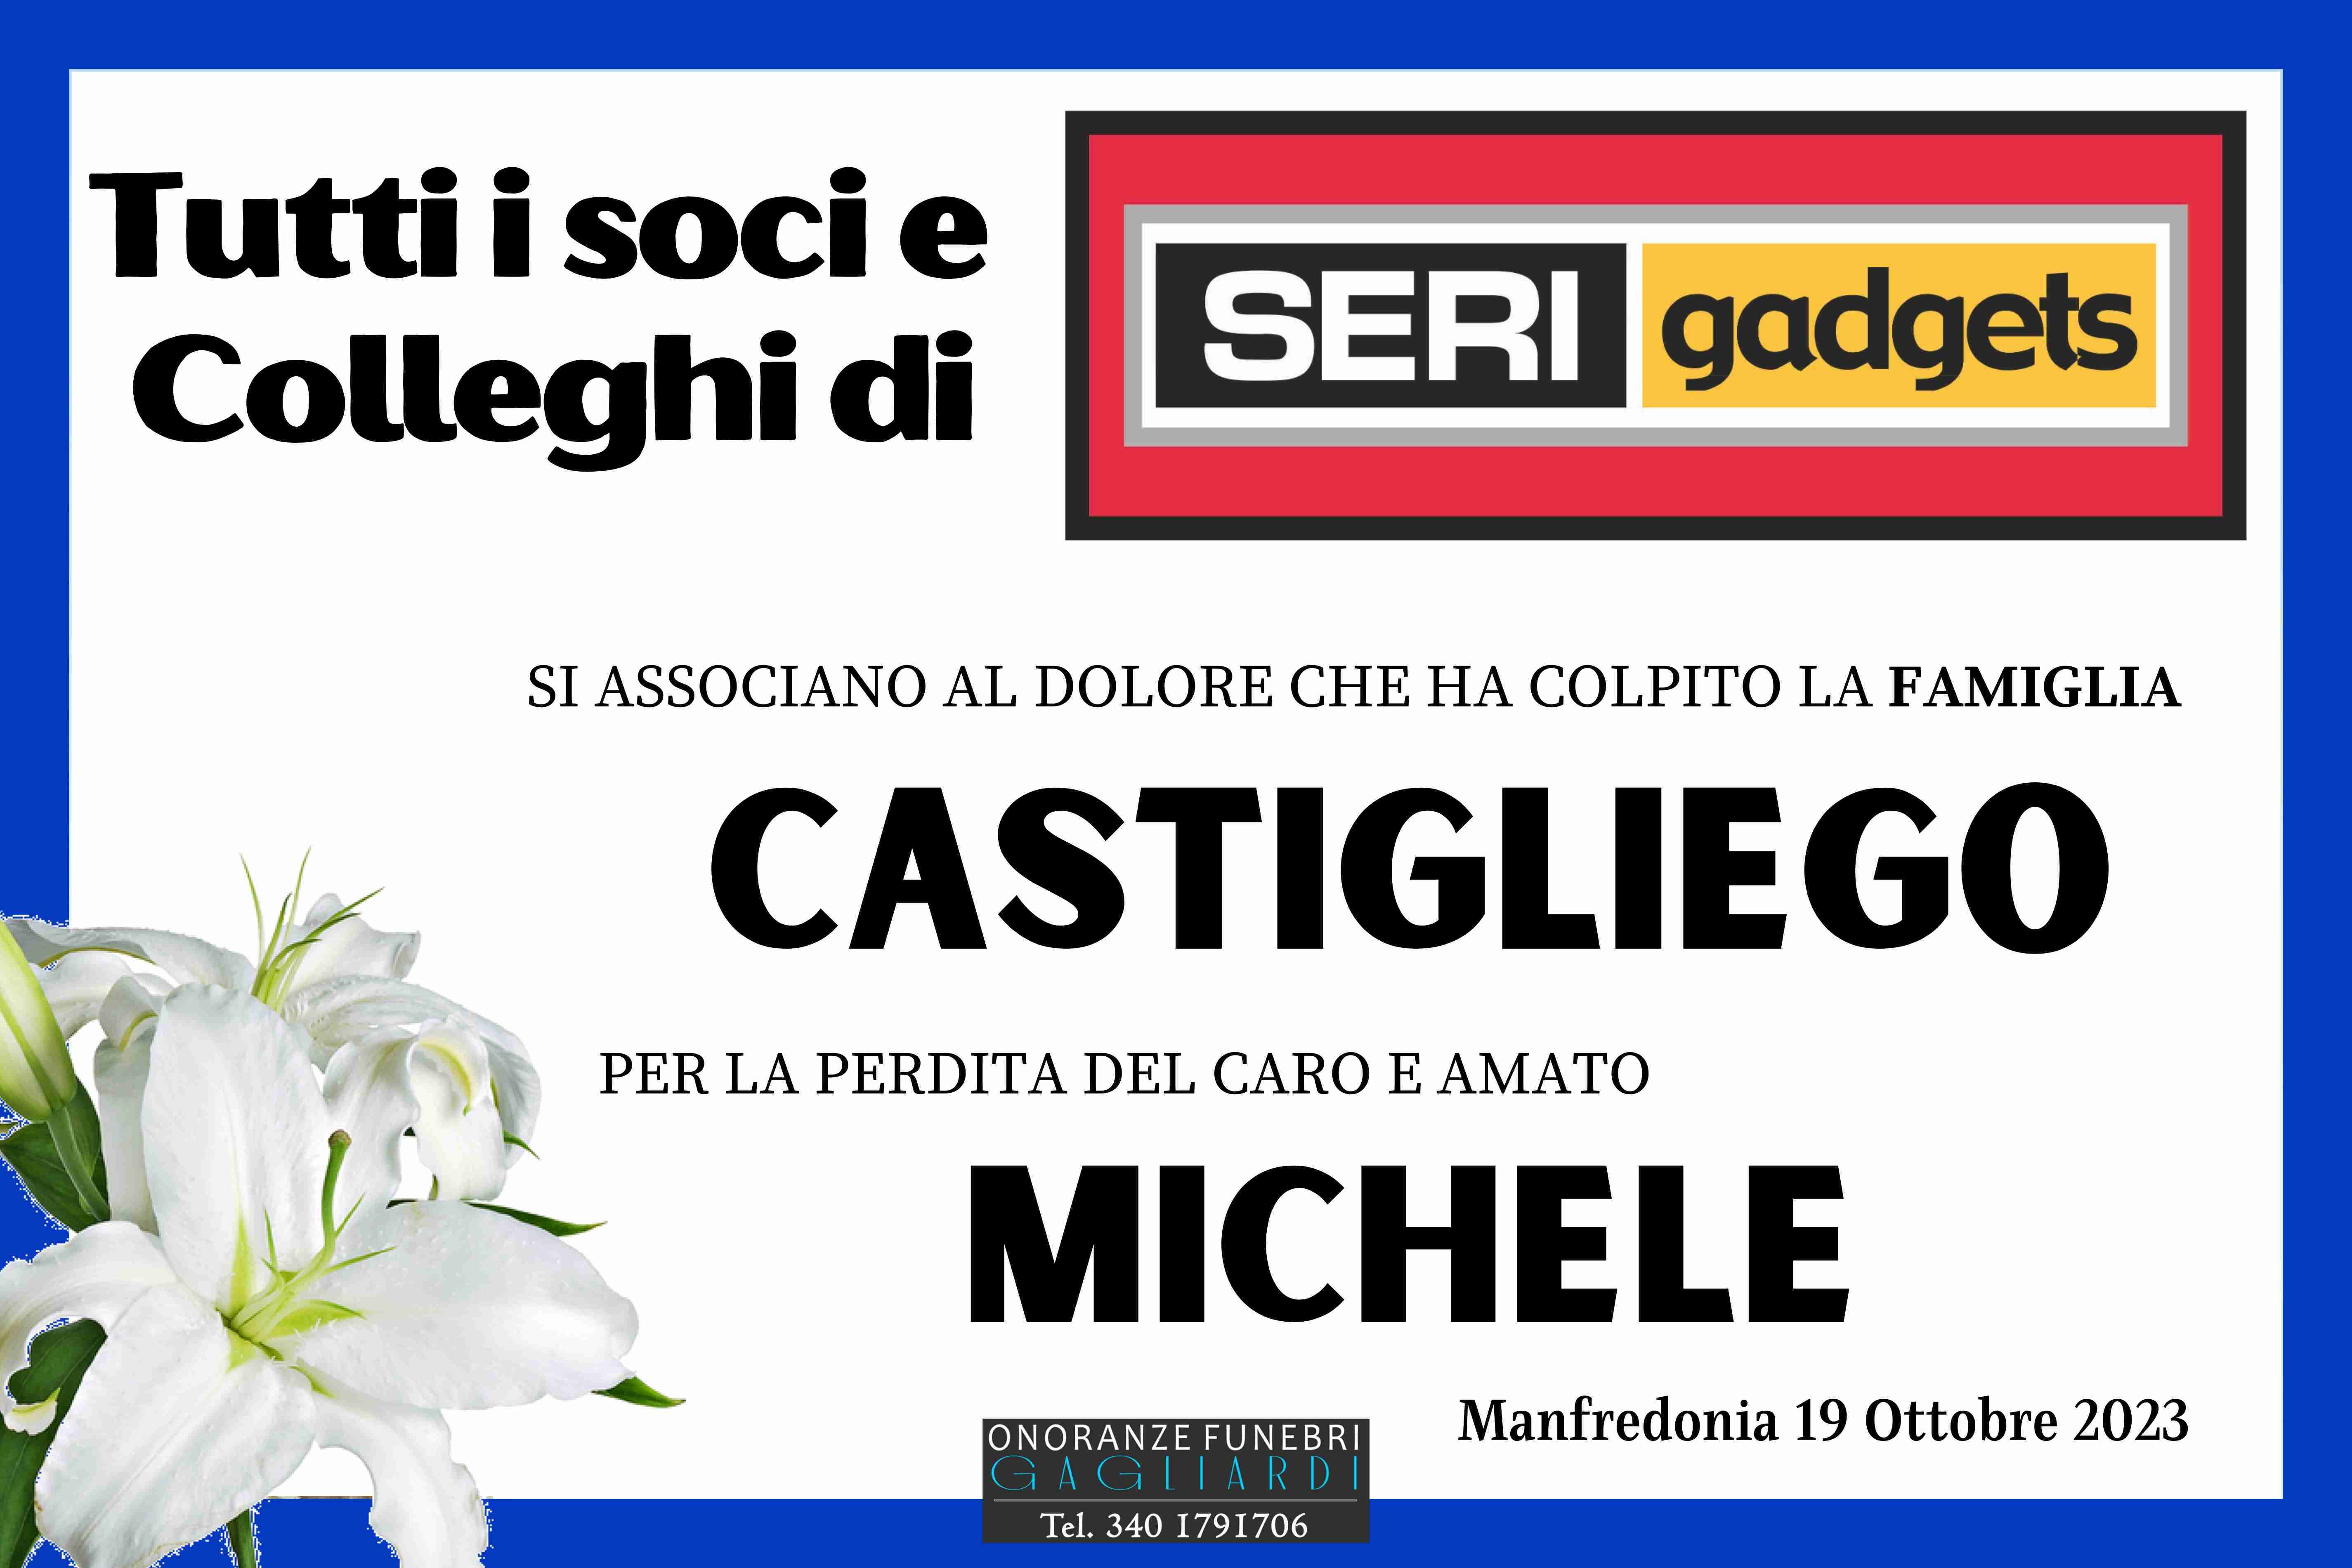 Michele Castigliego